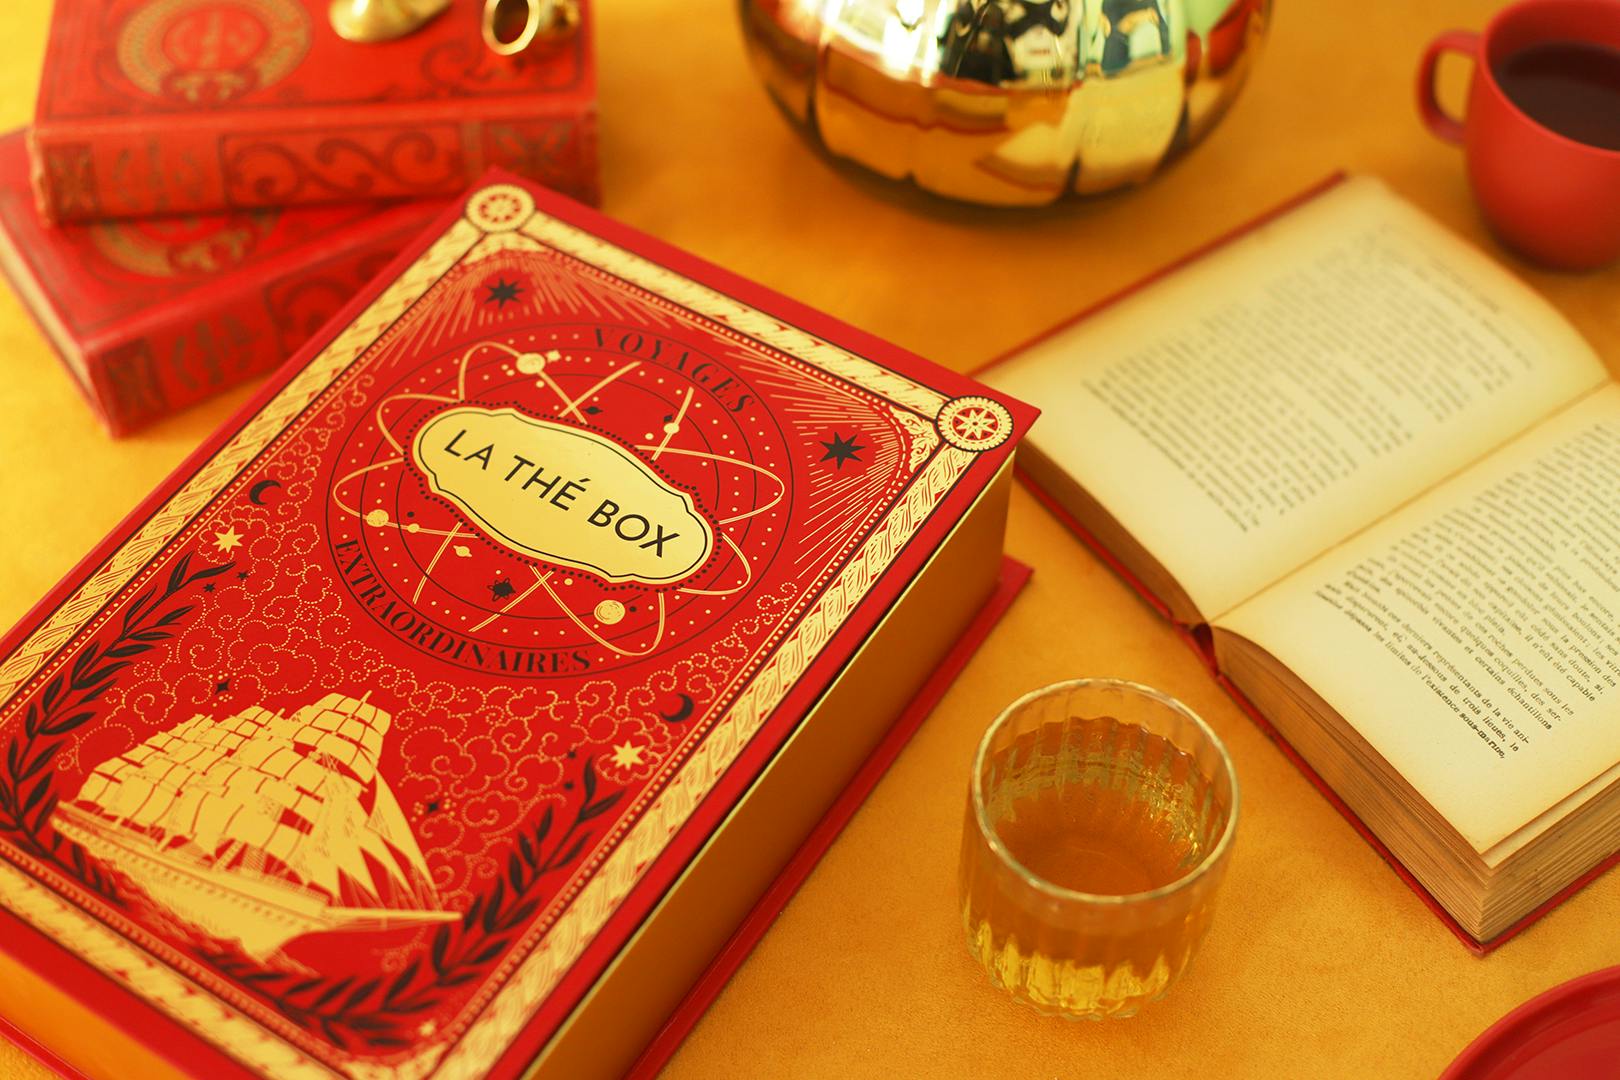 thébox Jules Verne avec une tasse de thé